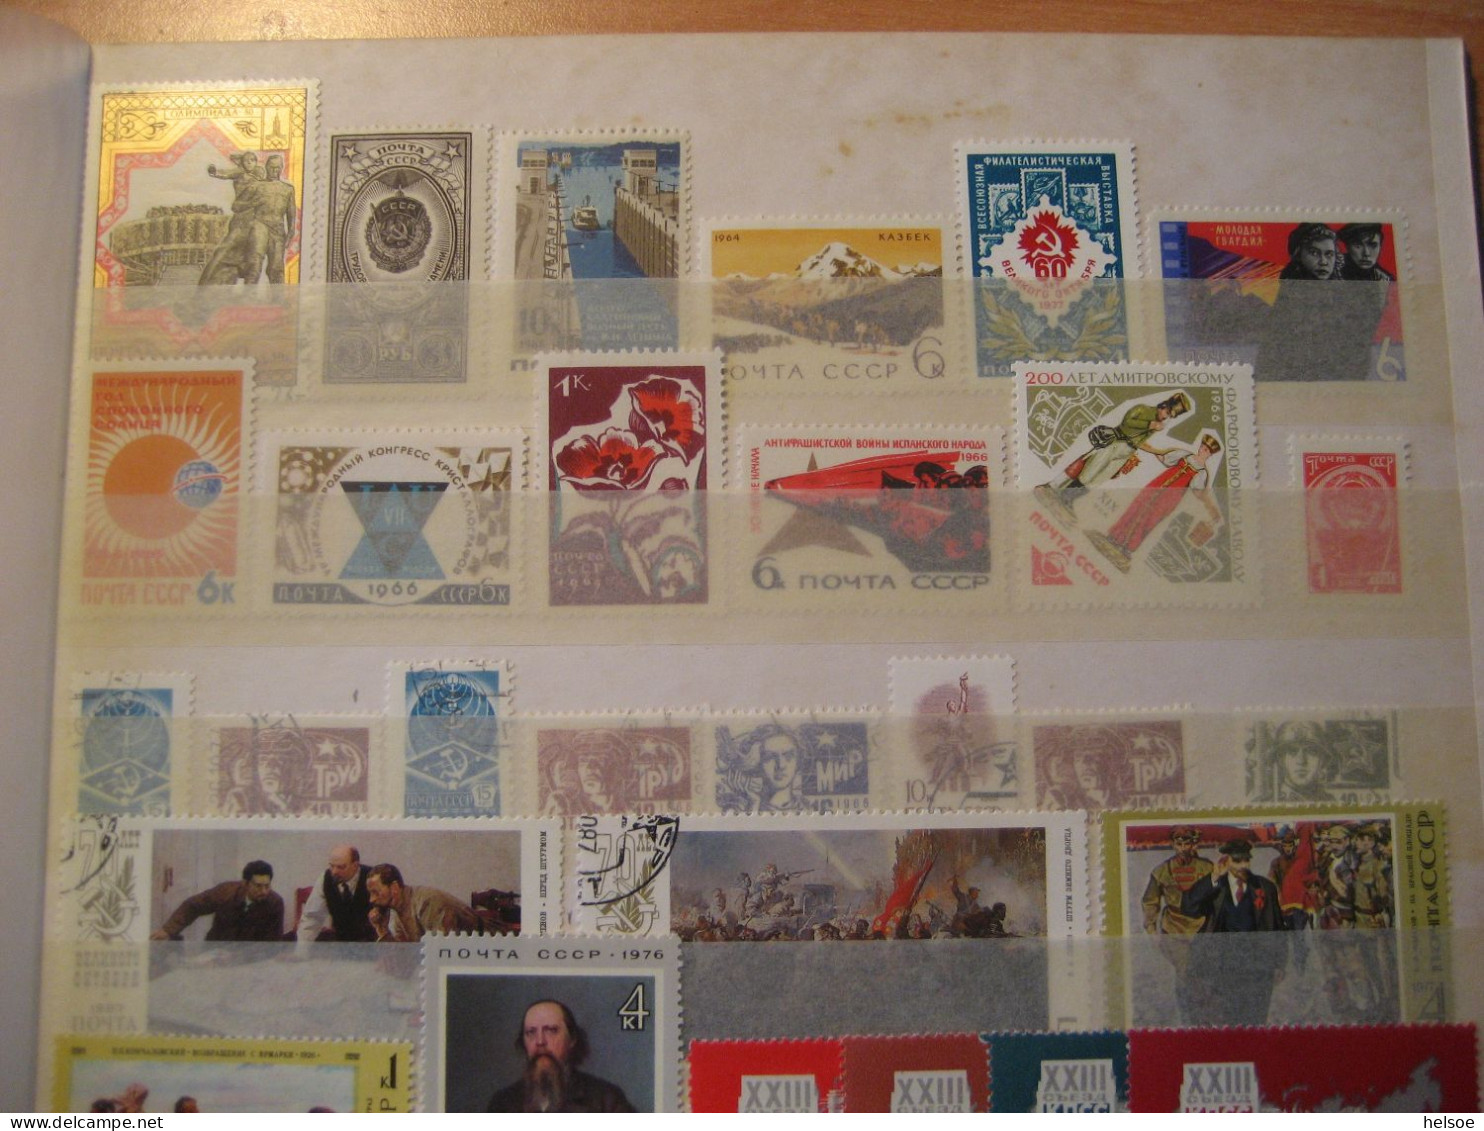 Russland- Sammlung von Frei- und Sondermarken, Blocks Briefe im Album mit 16 Seiten, ** postfrisch und gebraucht